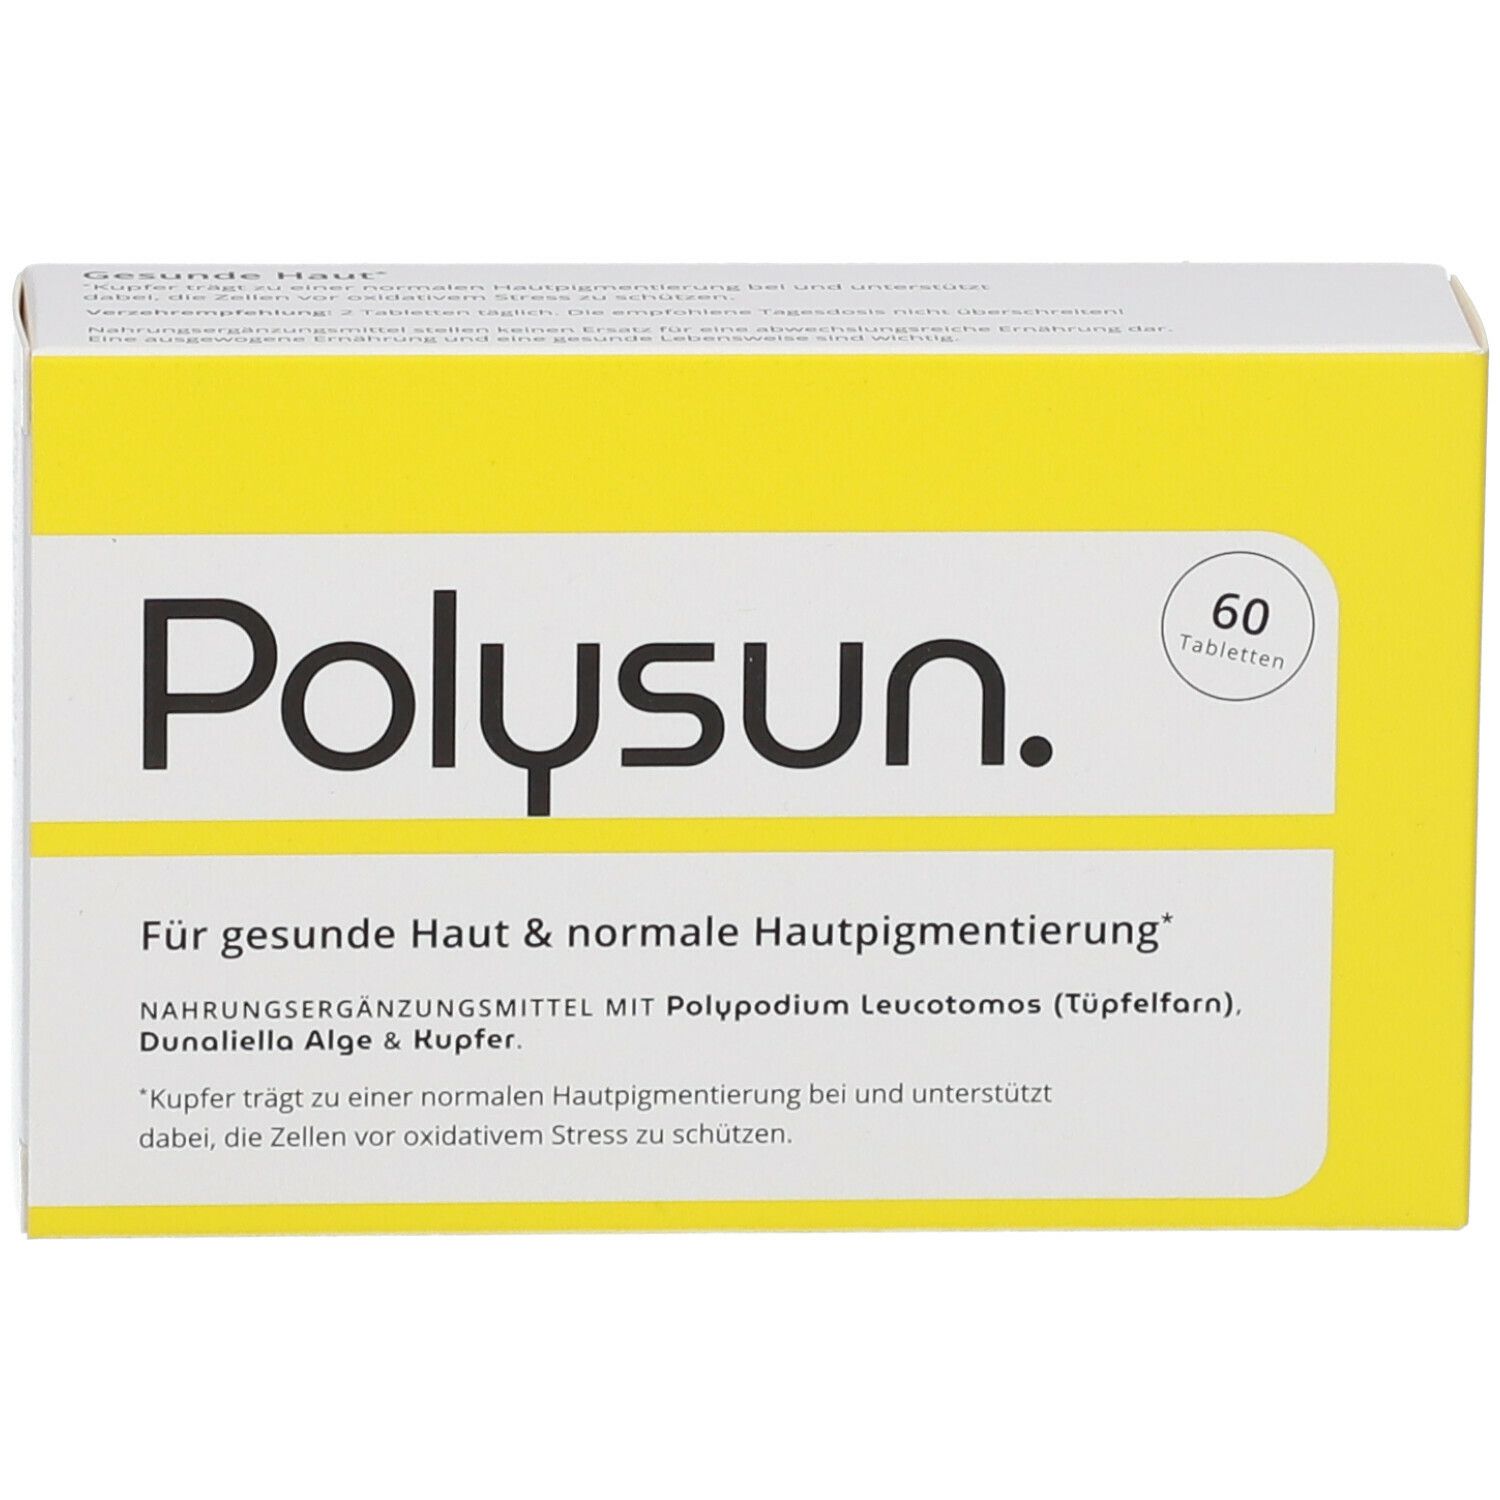 Polysun Tabletten